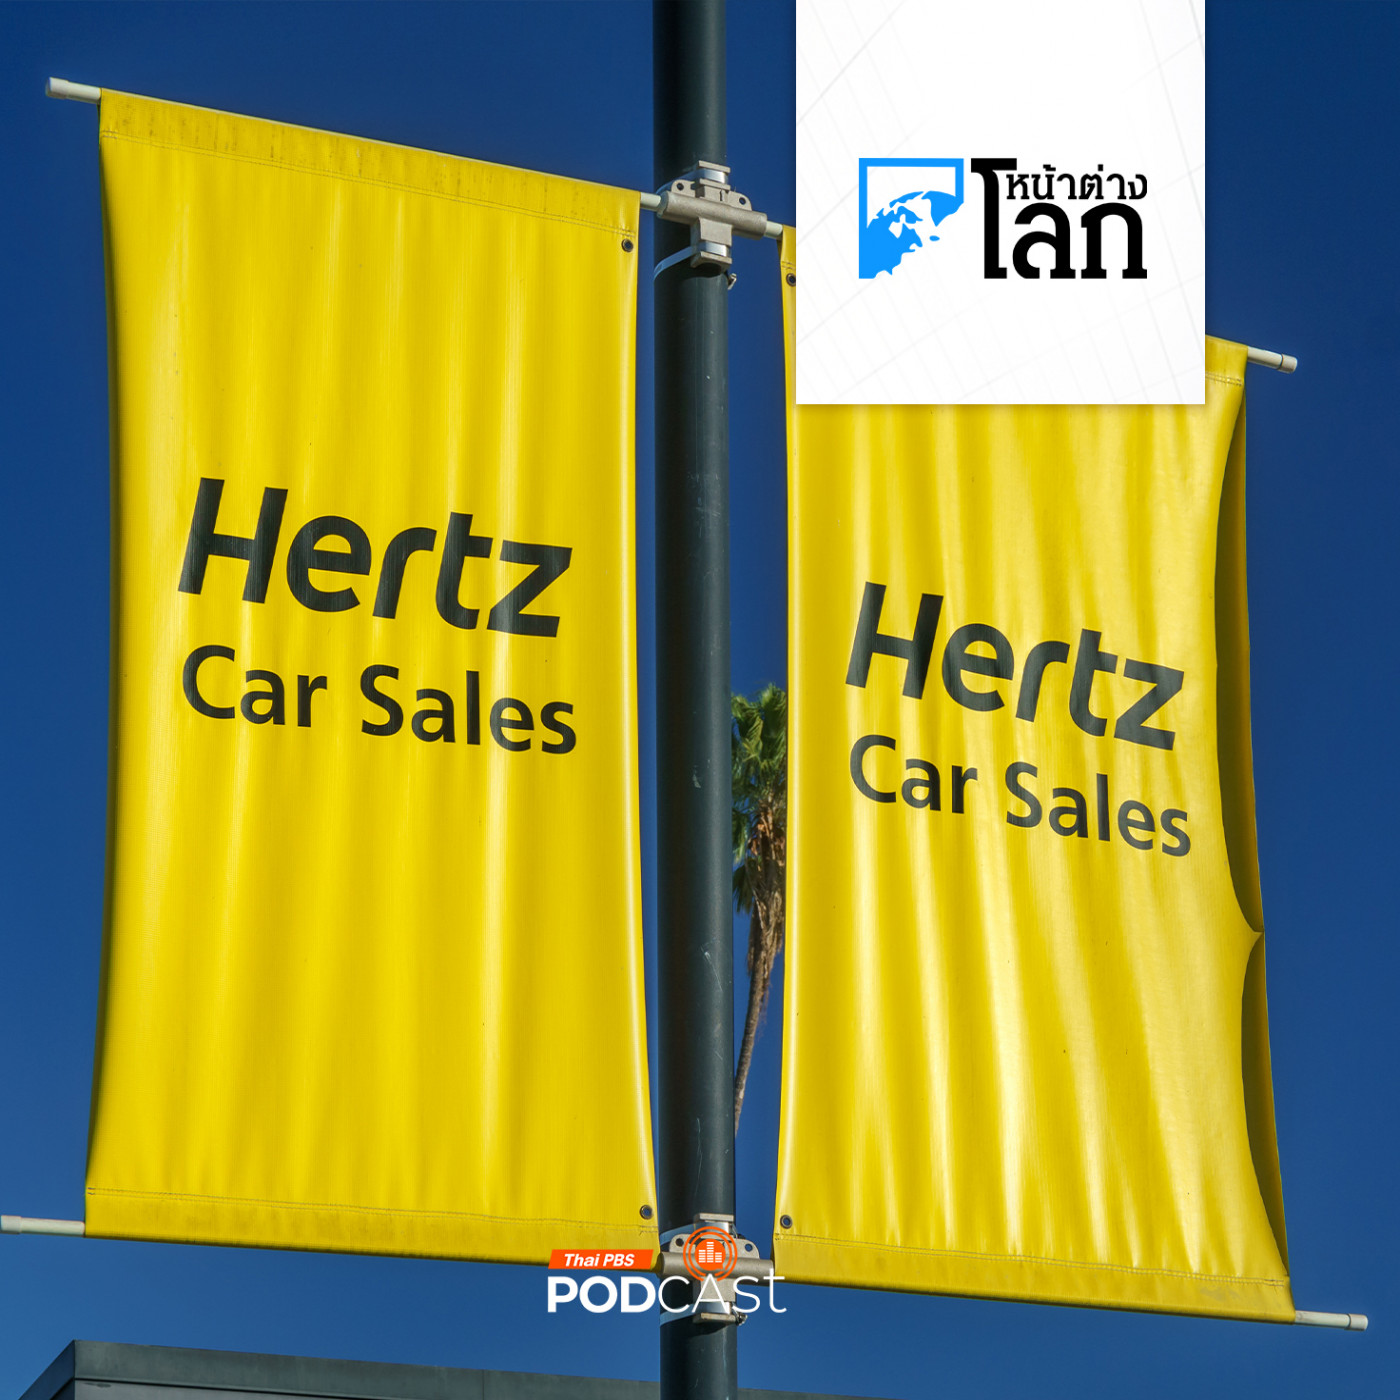 หน้าต่างโลก : Hertz เทขายรถไฟฟ้าหันไปซื้อรถสันดาปแทน